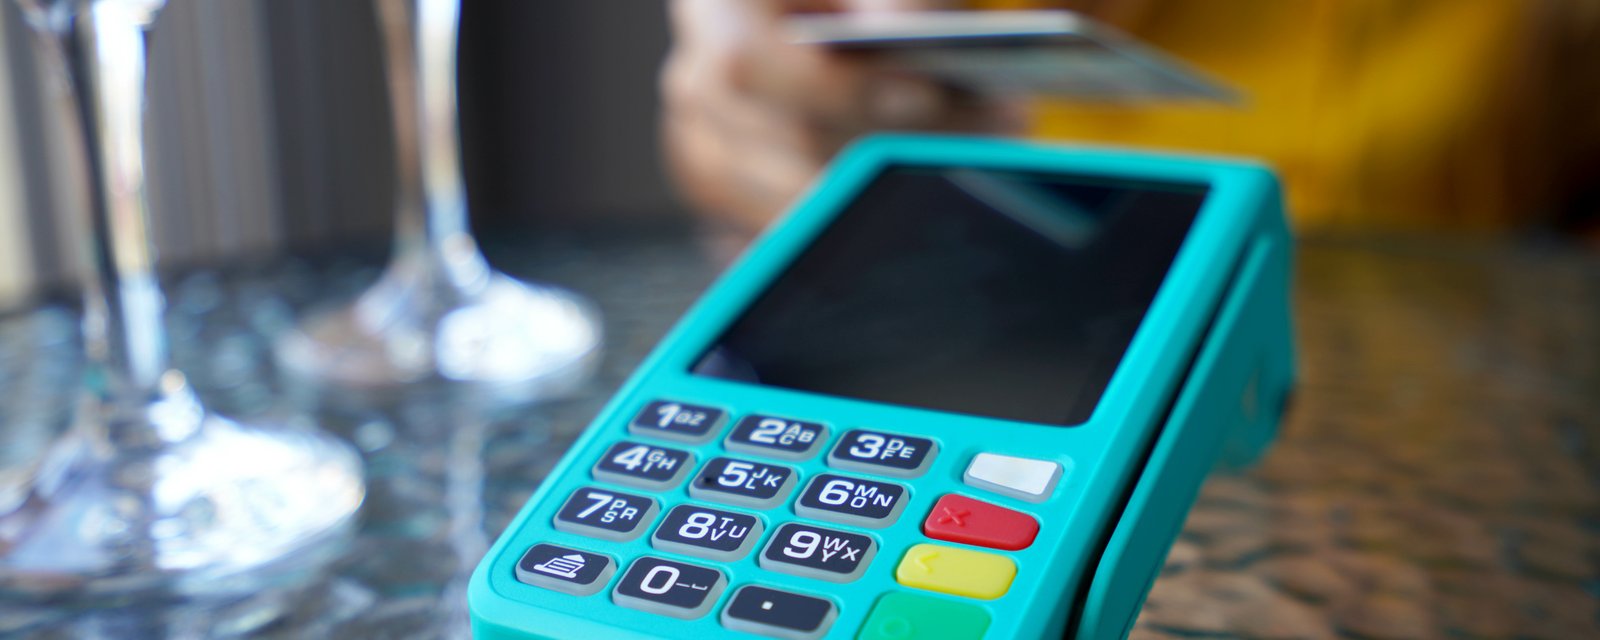 Des restaurants offrent maintenant des rabais si vous ne payez pas avec une carte de crédit.